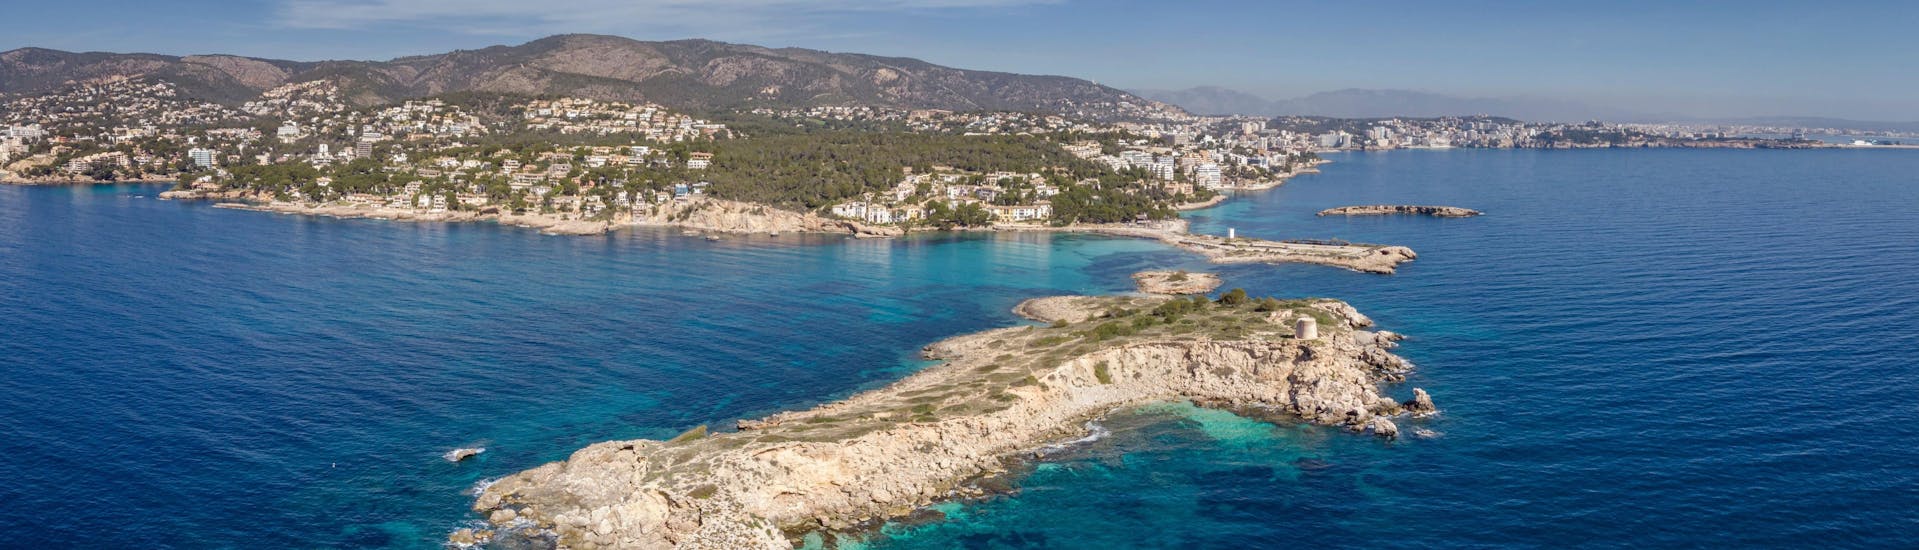 Uitzicht op Illetes strand, Calvià, Mallorca, een populaire bestemming voor boottochten. 